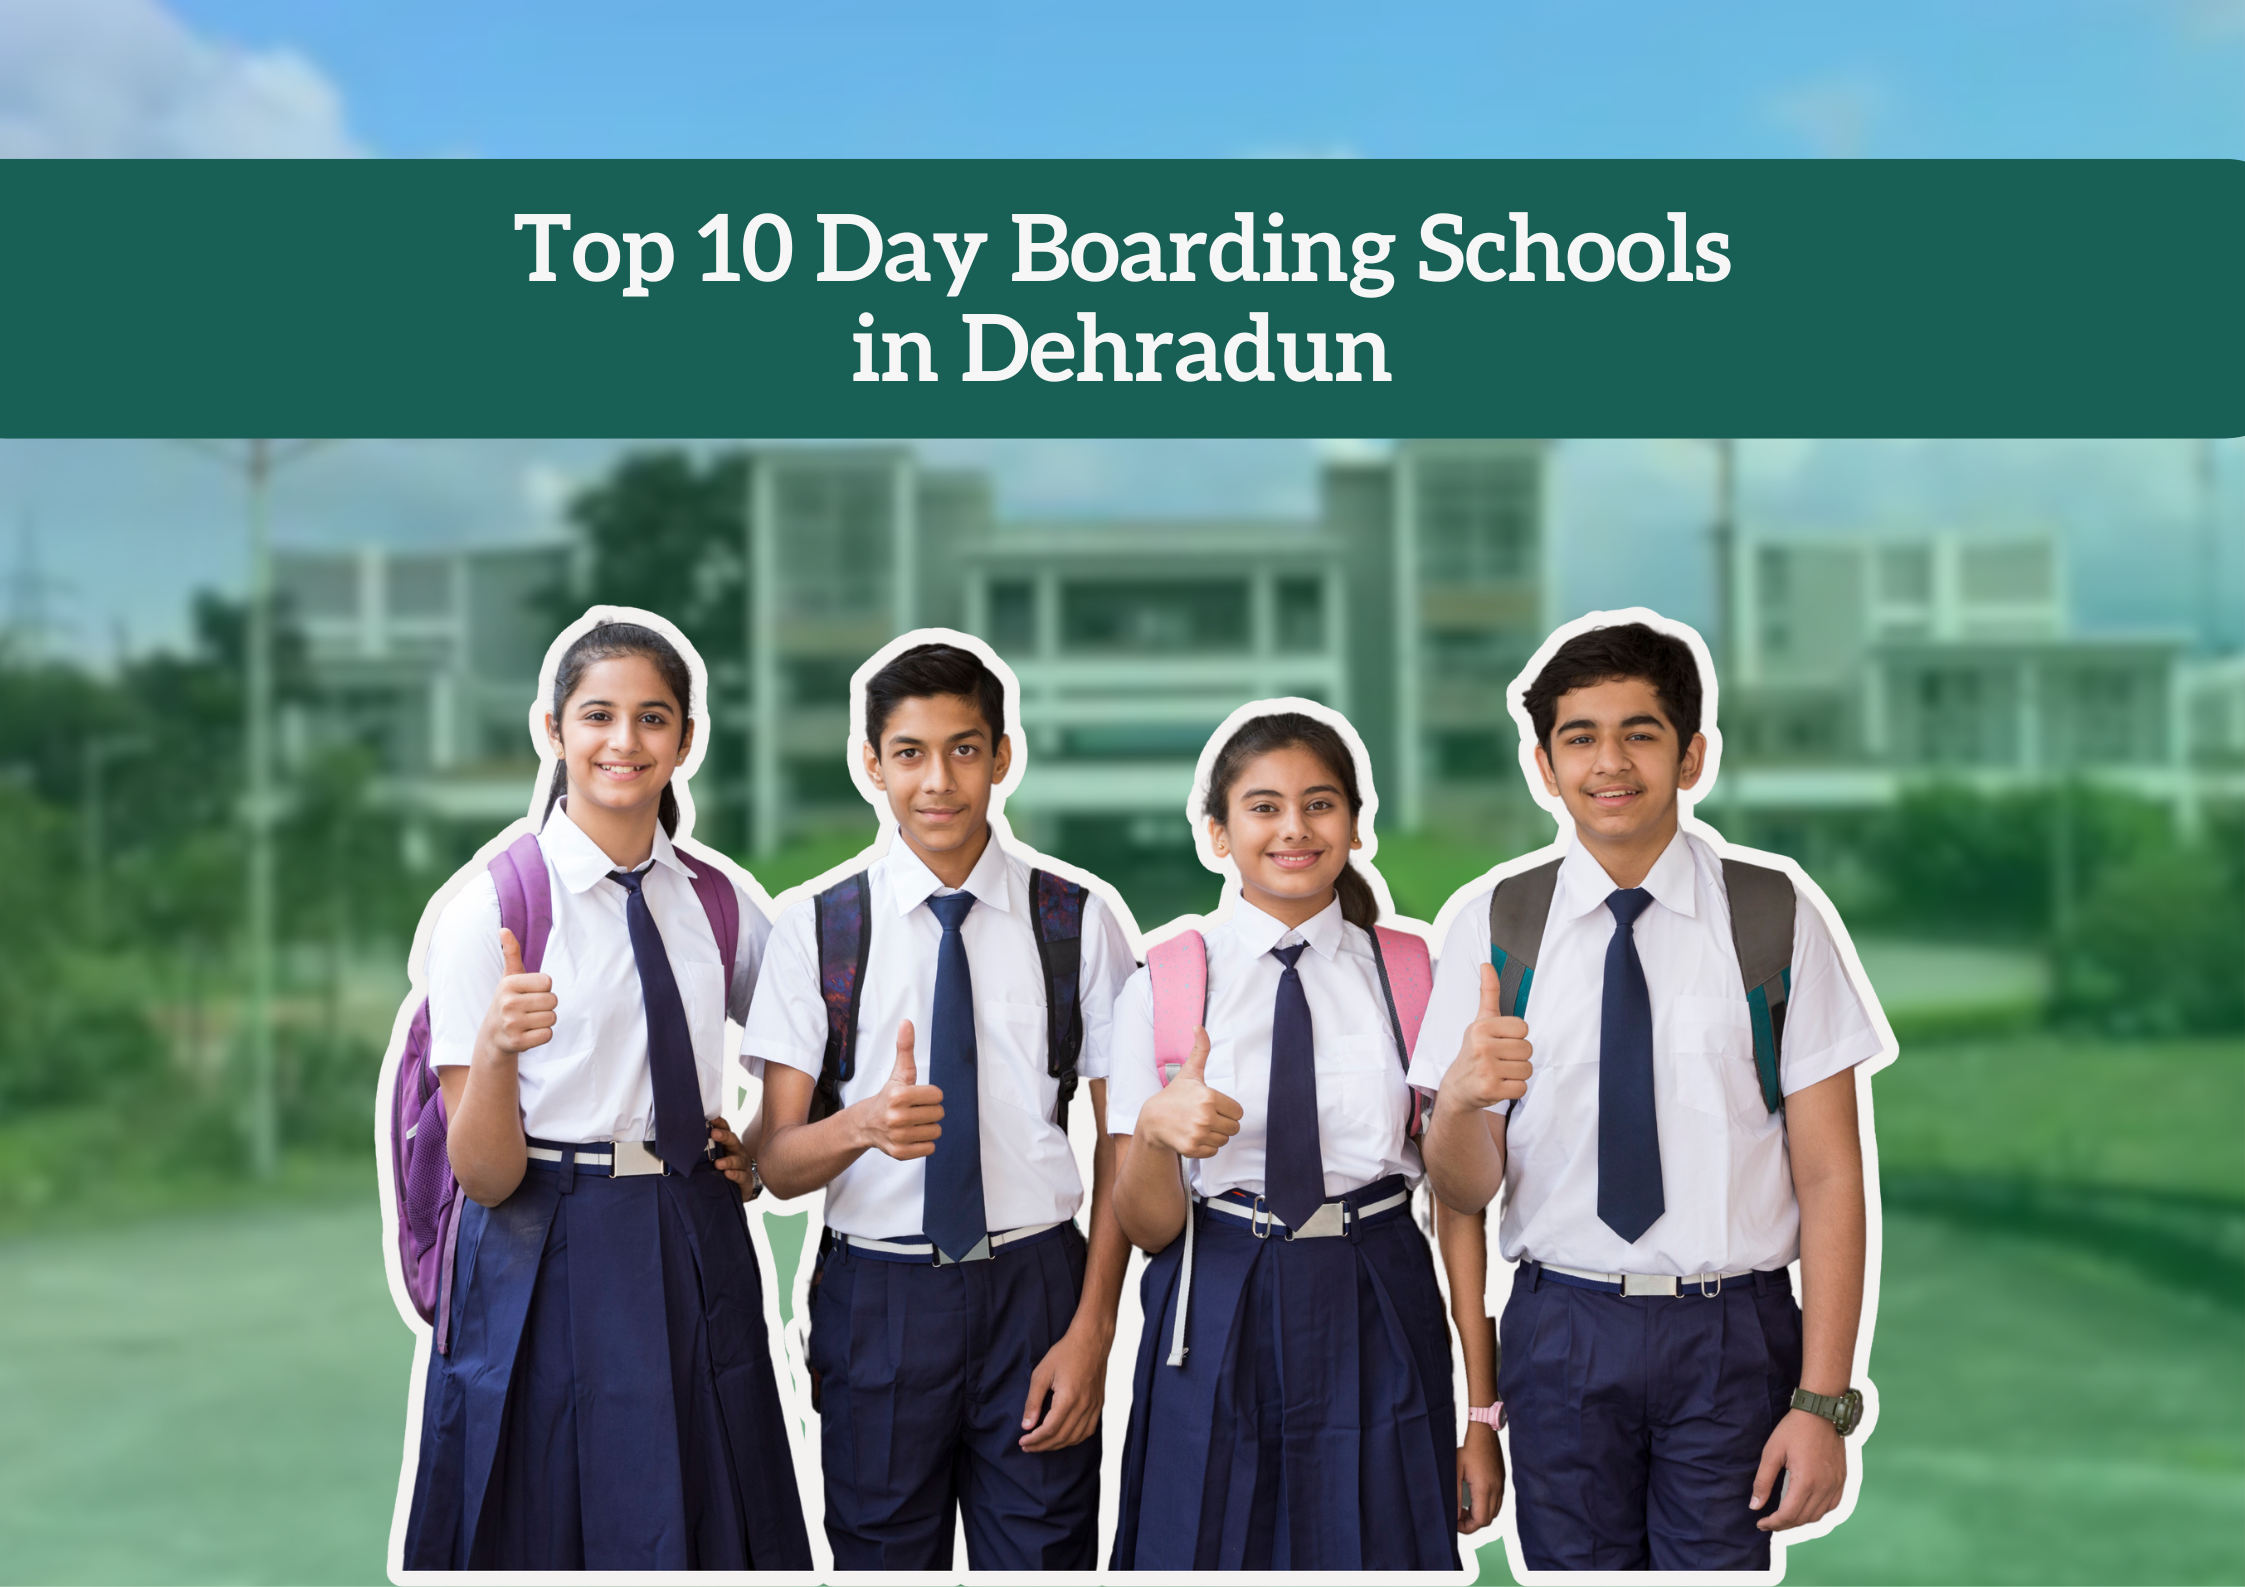 Top 10 Day Boarding Schools in Dehradun